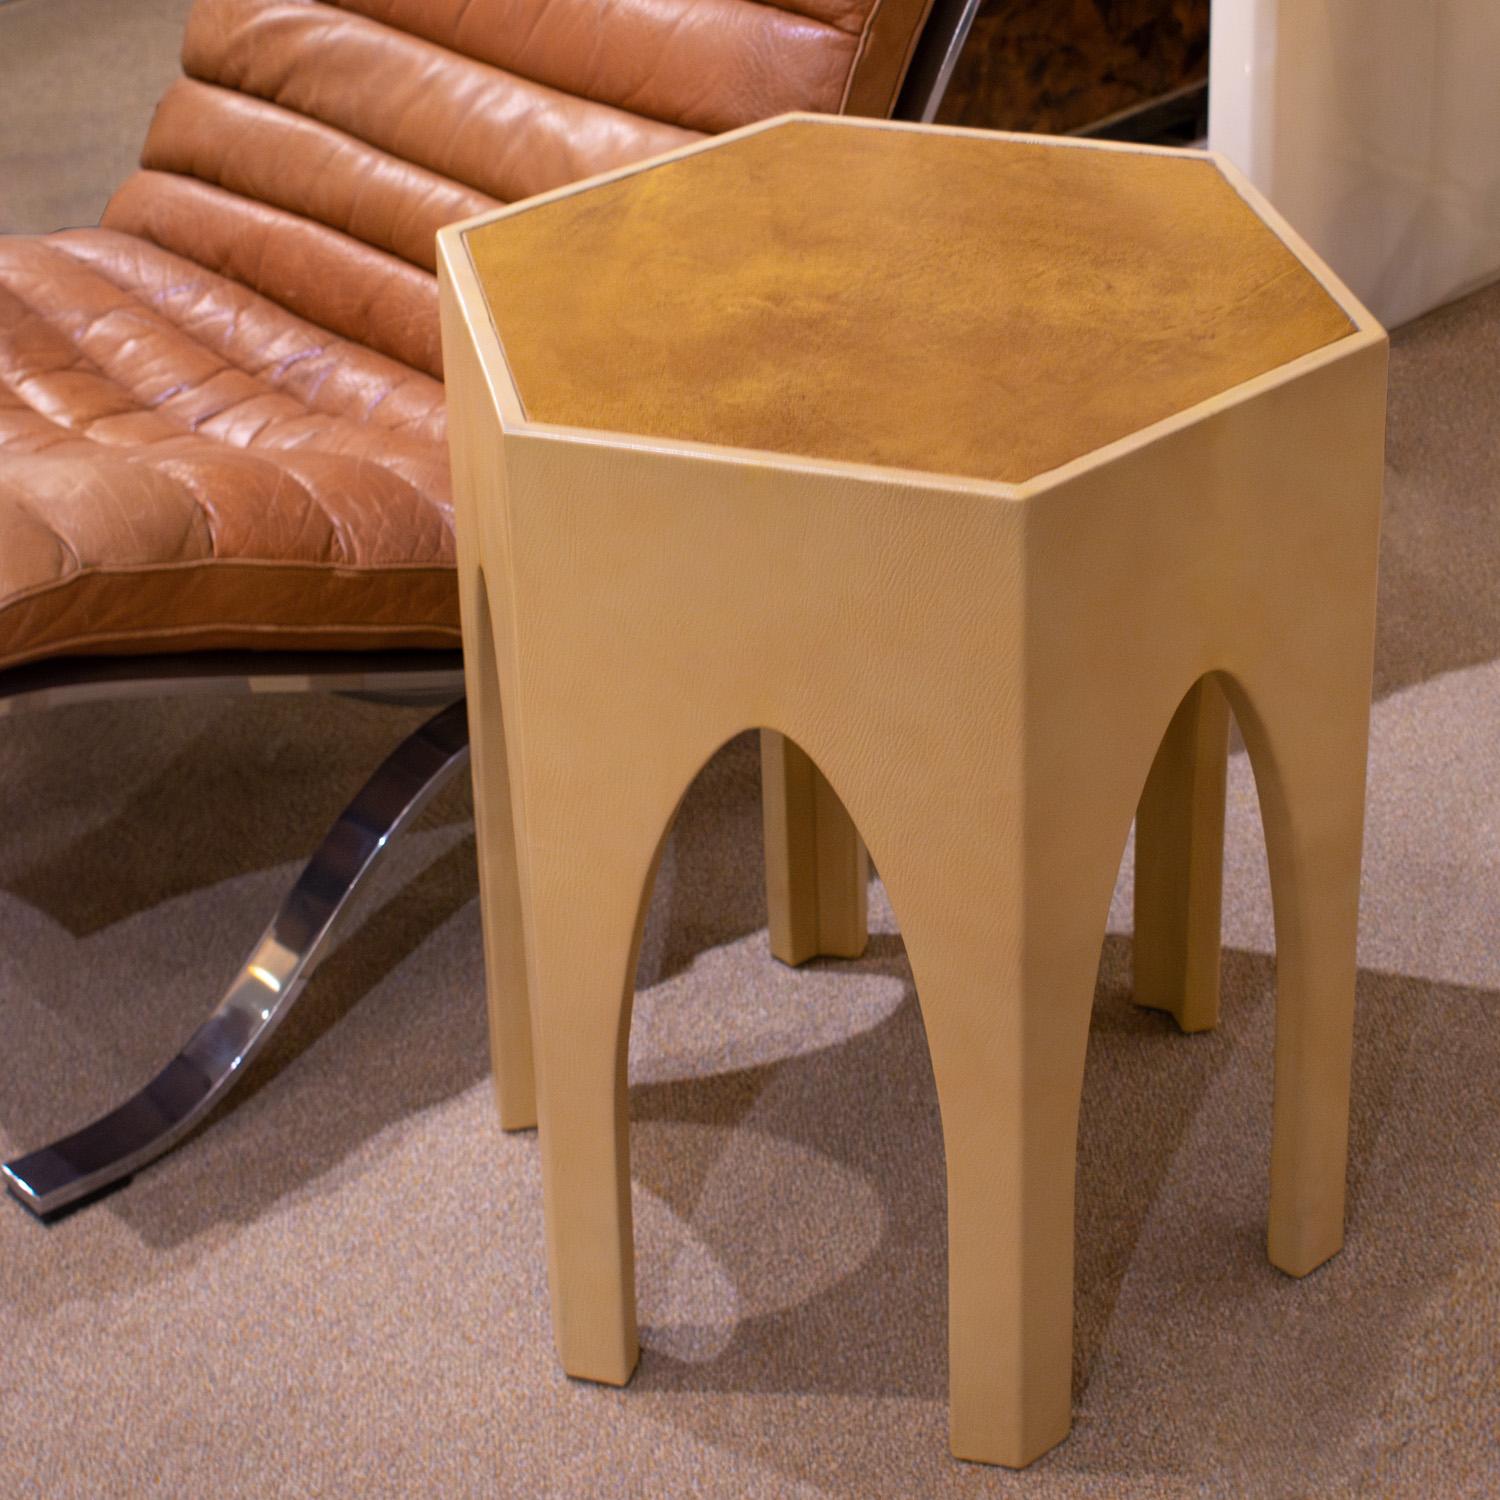 Fin du 20e siècle Prototype de table cathédrale en cuir de Karl Springer 1976-1978 en vente